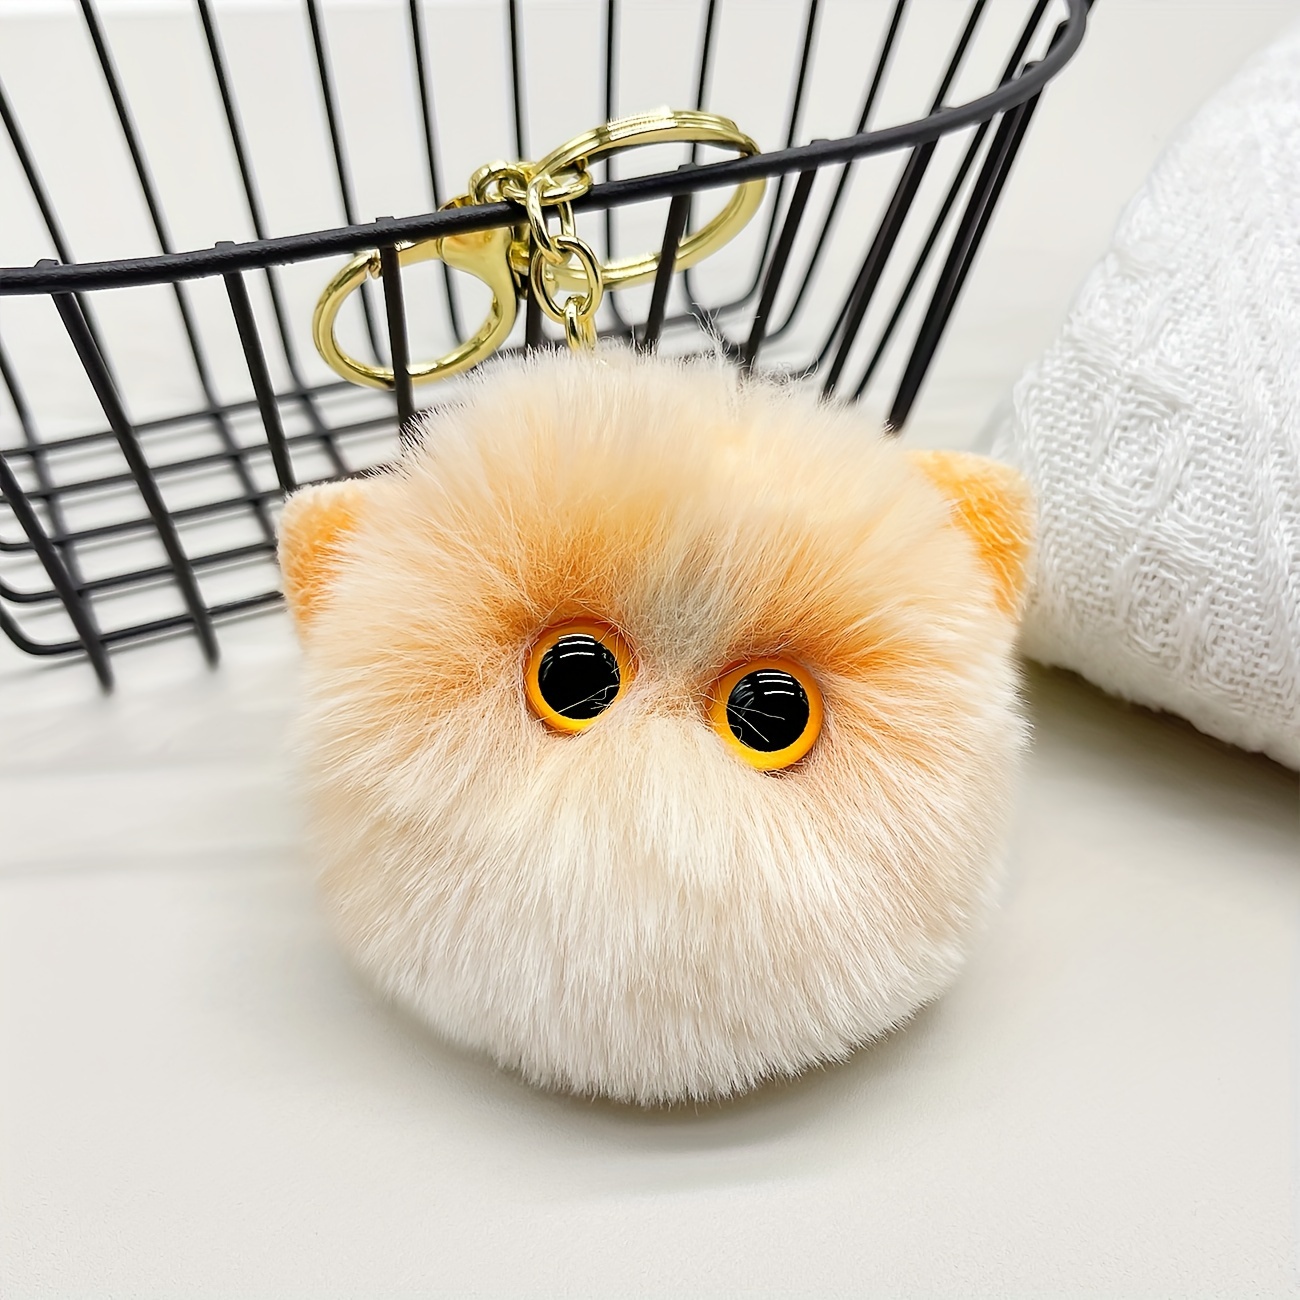 Cute Fluffy Owl Pompom Key Ring Holder Keychain Women Car Bag Pendant  Ornament